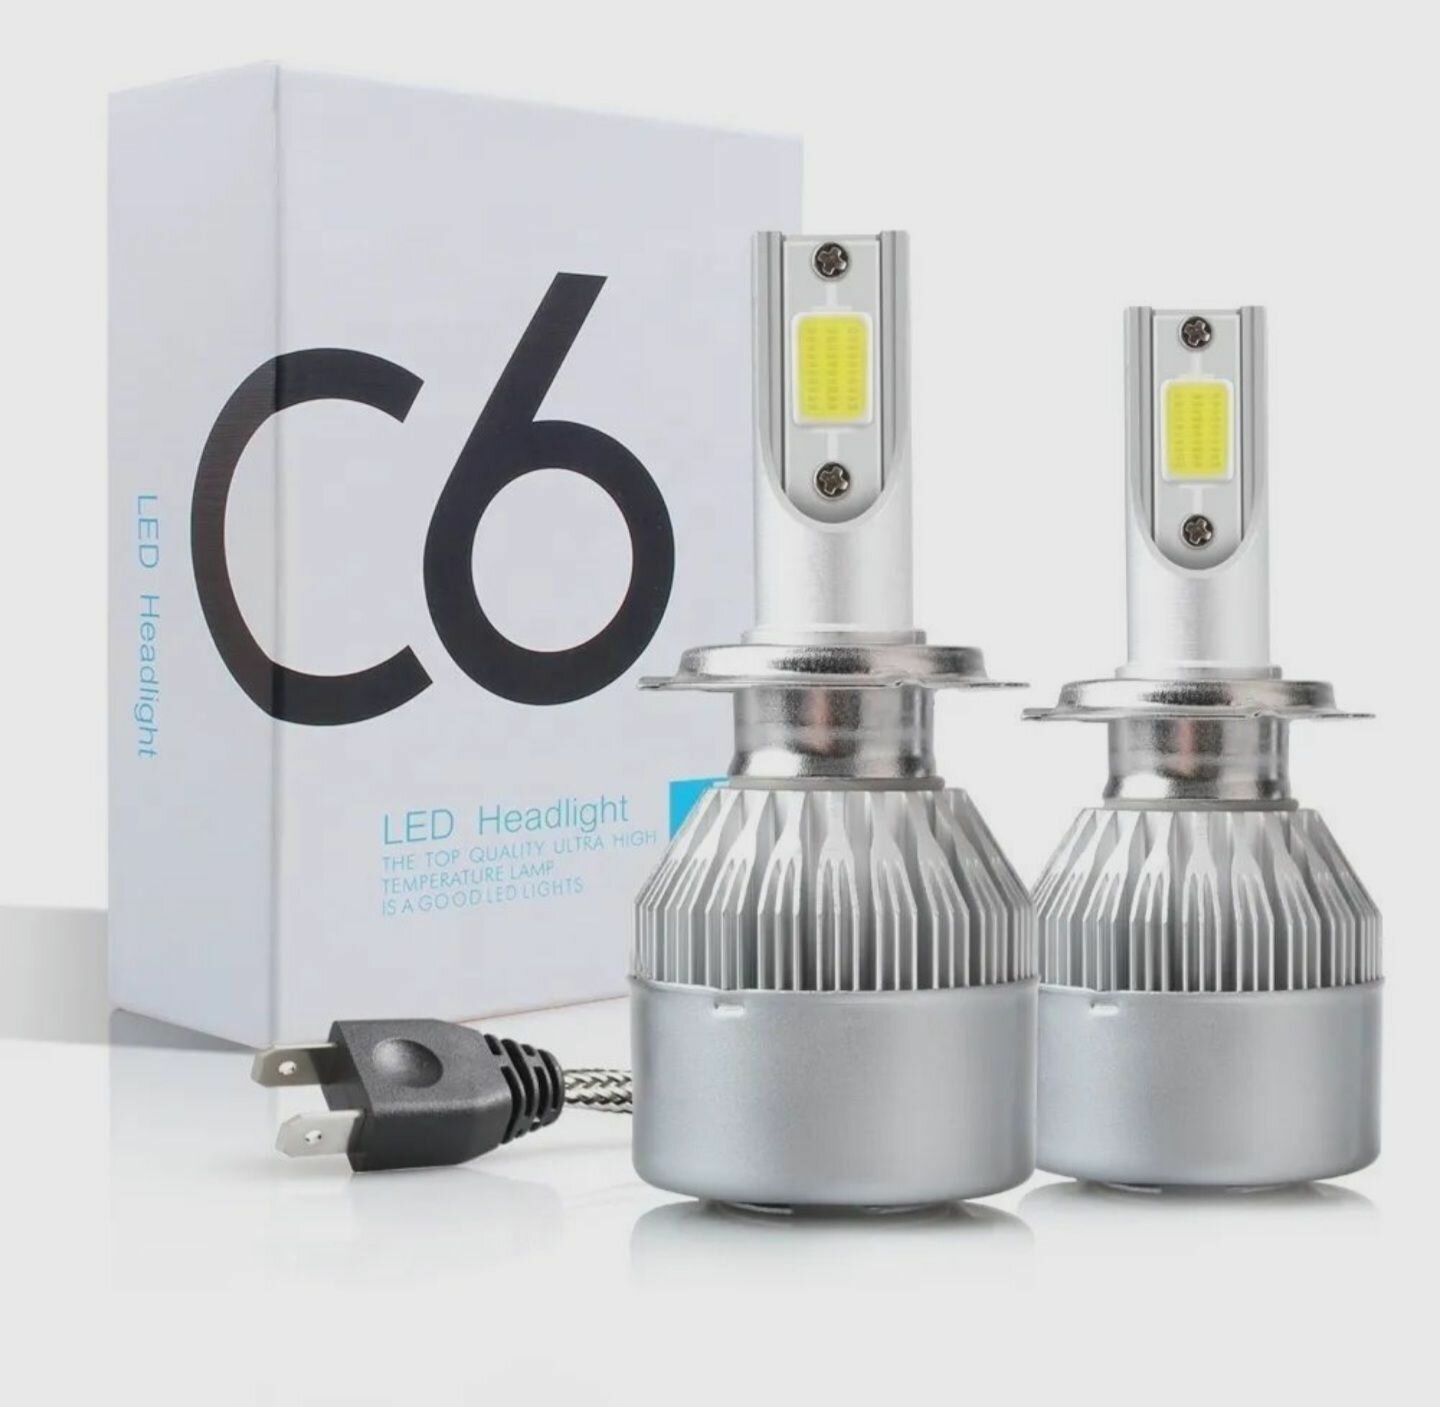 Лампа светодиодная LED C6 цоколь H3, 6000К, комплект 2шт, для головного света и птф